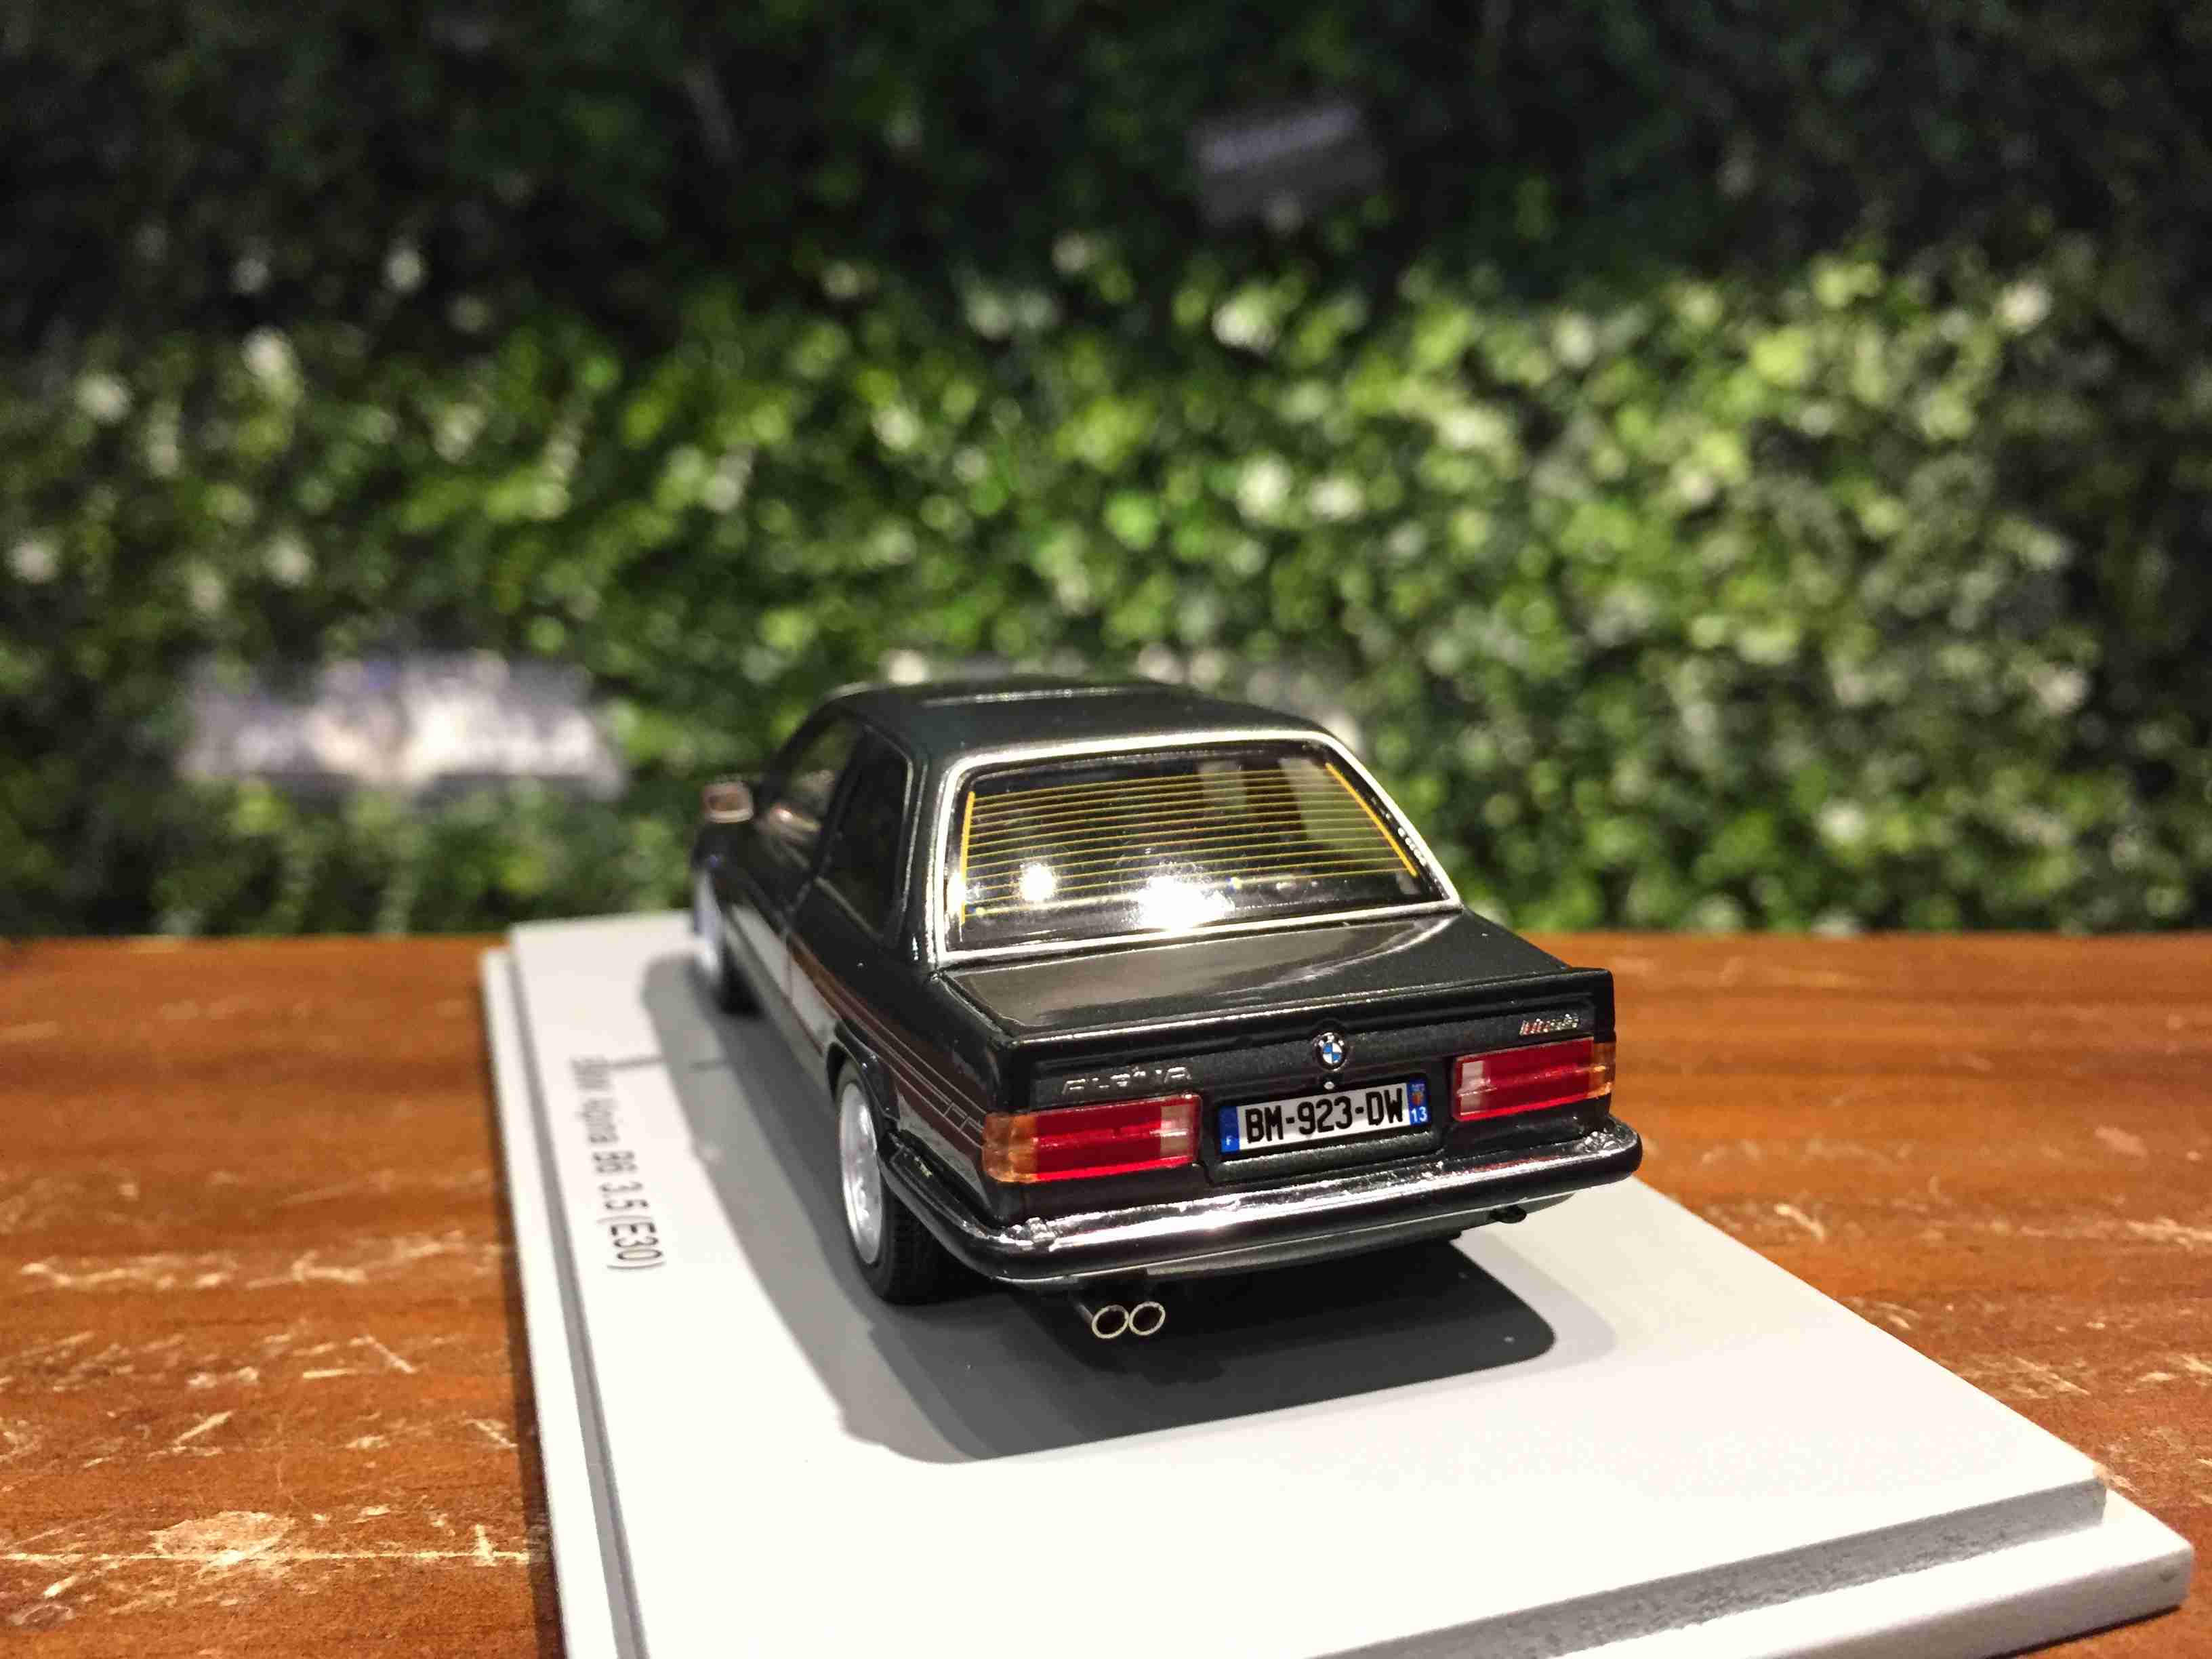 1/43 Spark BMW Alpina B6 3.5 (E30) 1986 S2808【MGM】